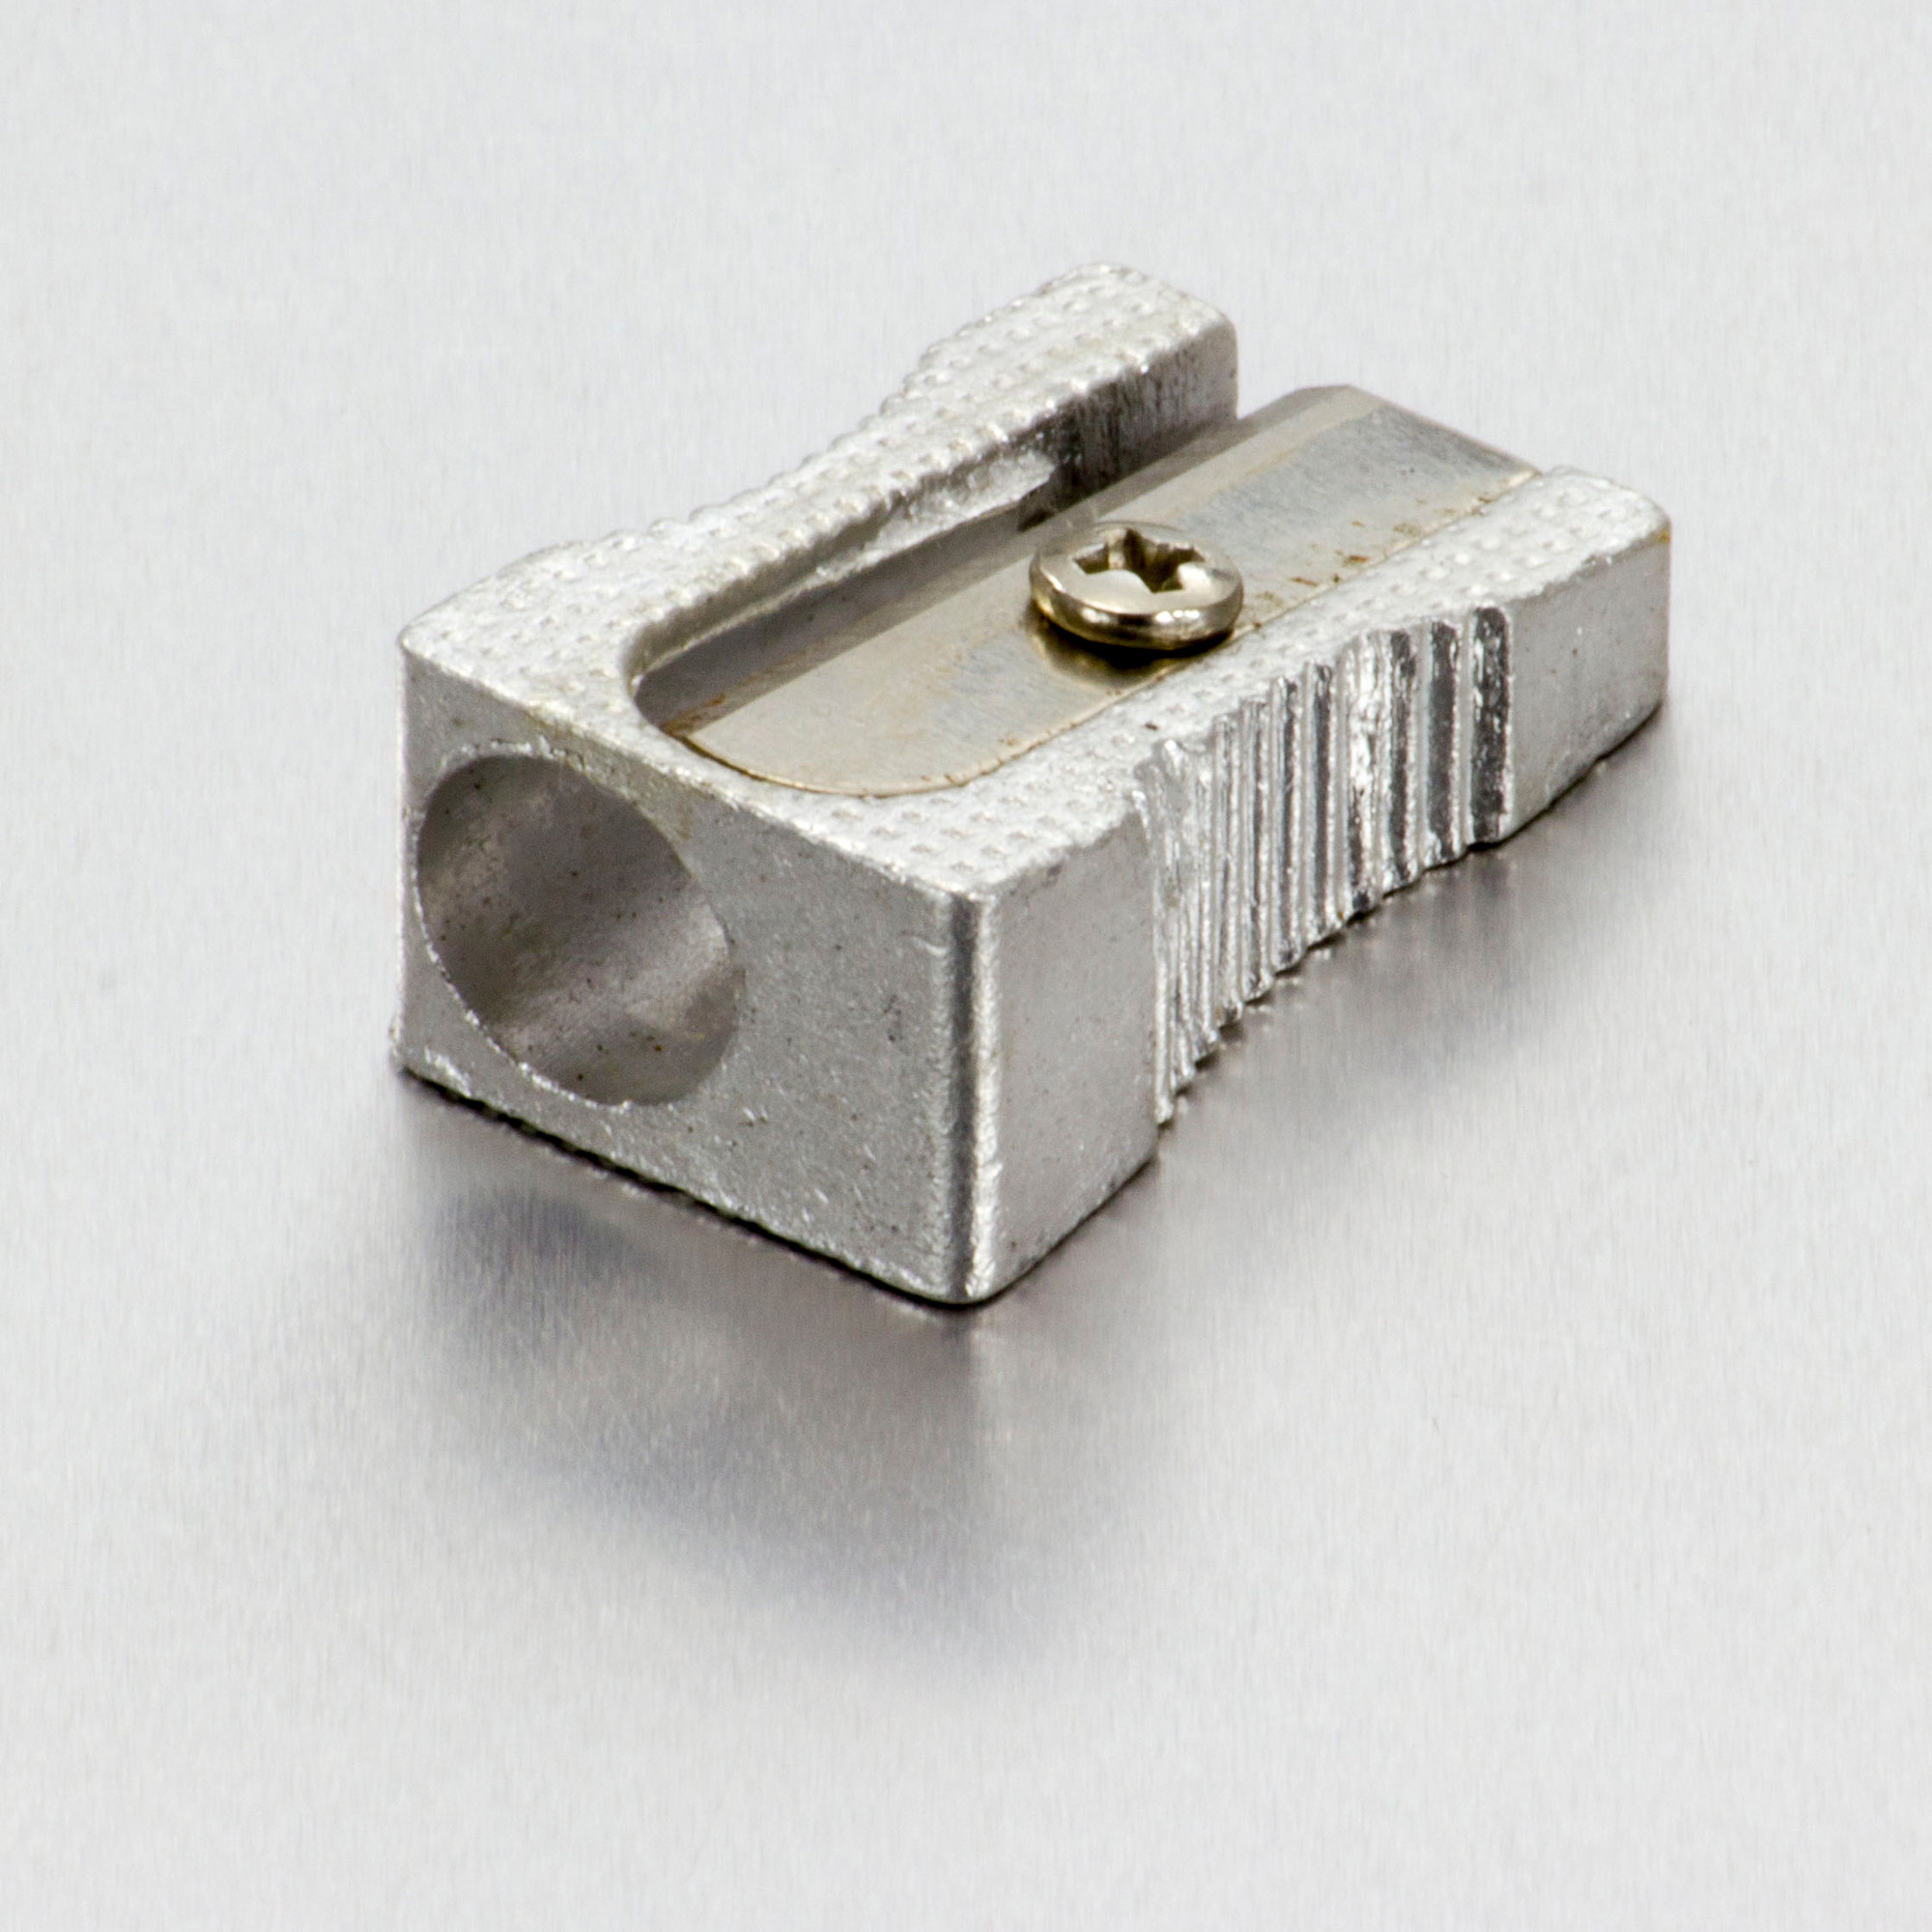 Integra Aluminum Pocket Pencil Sharpener